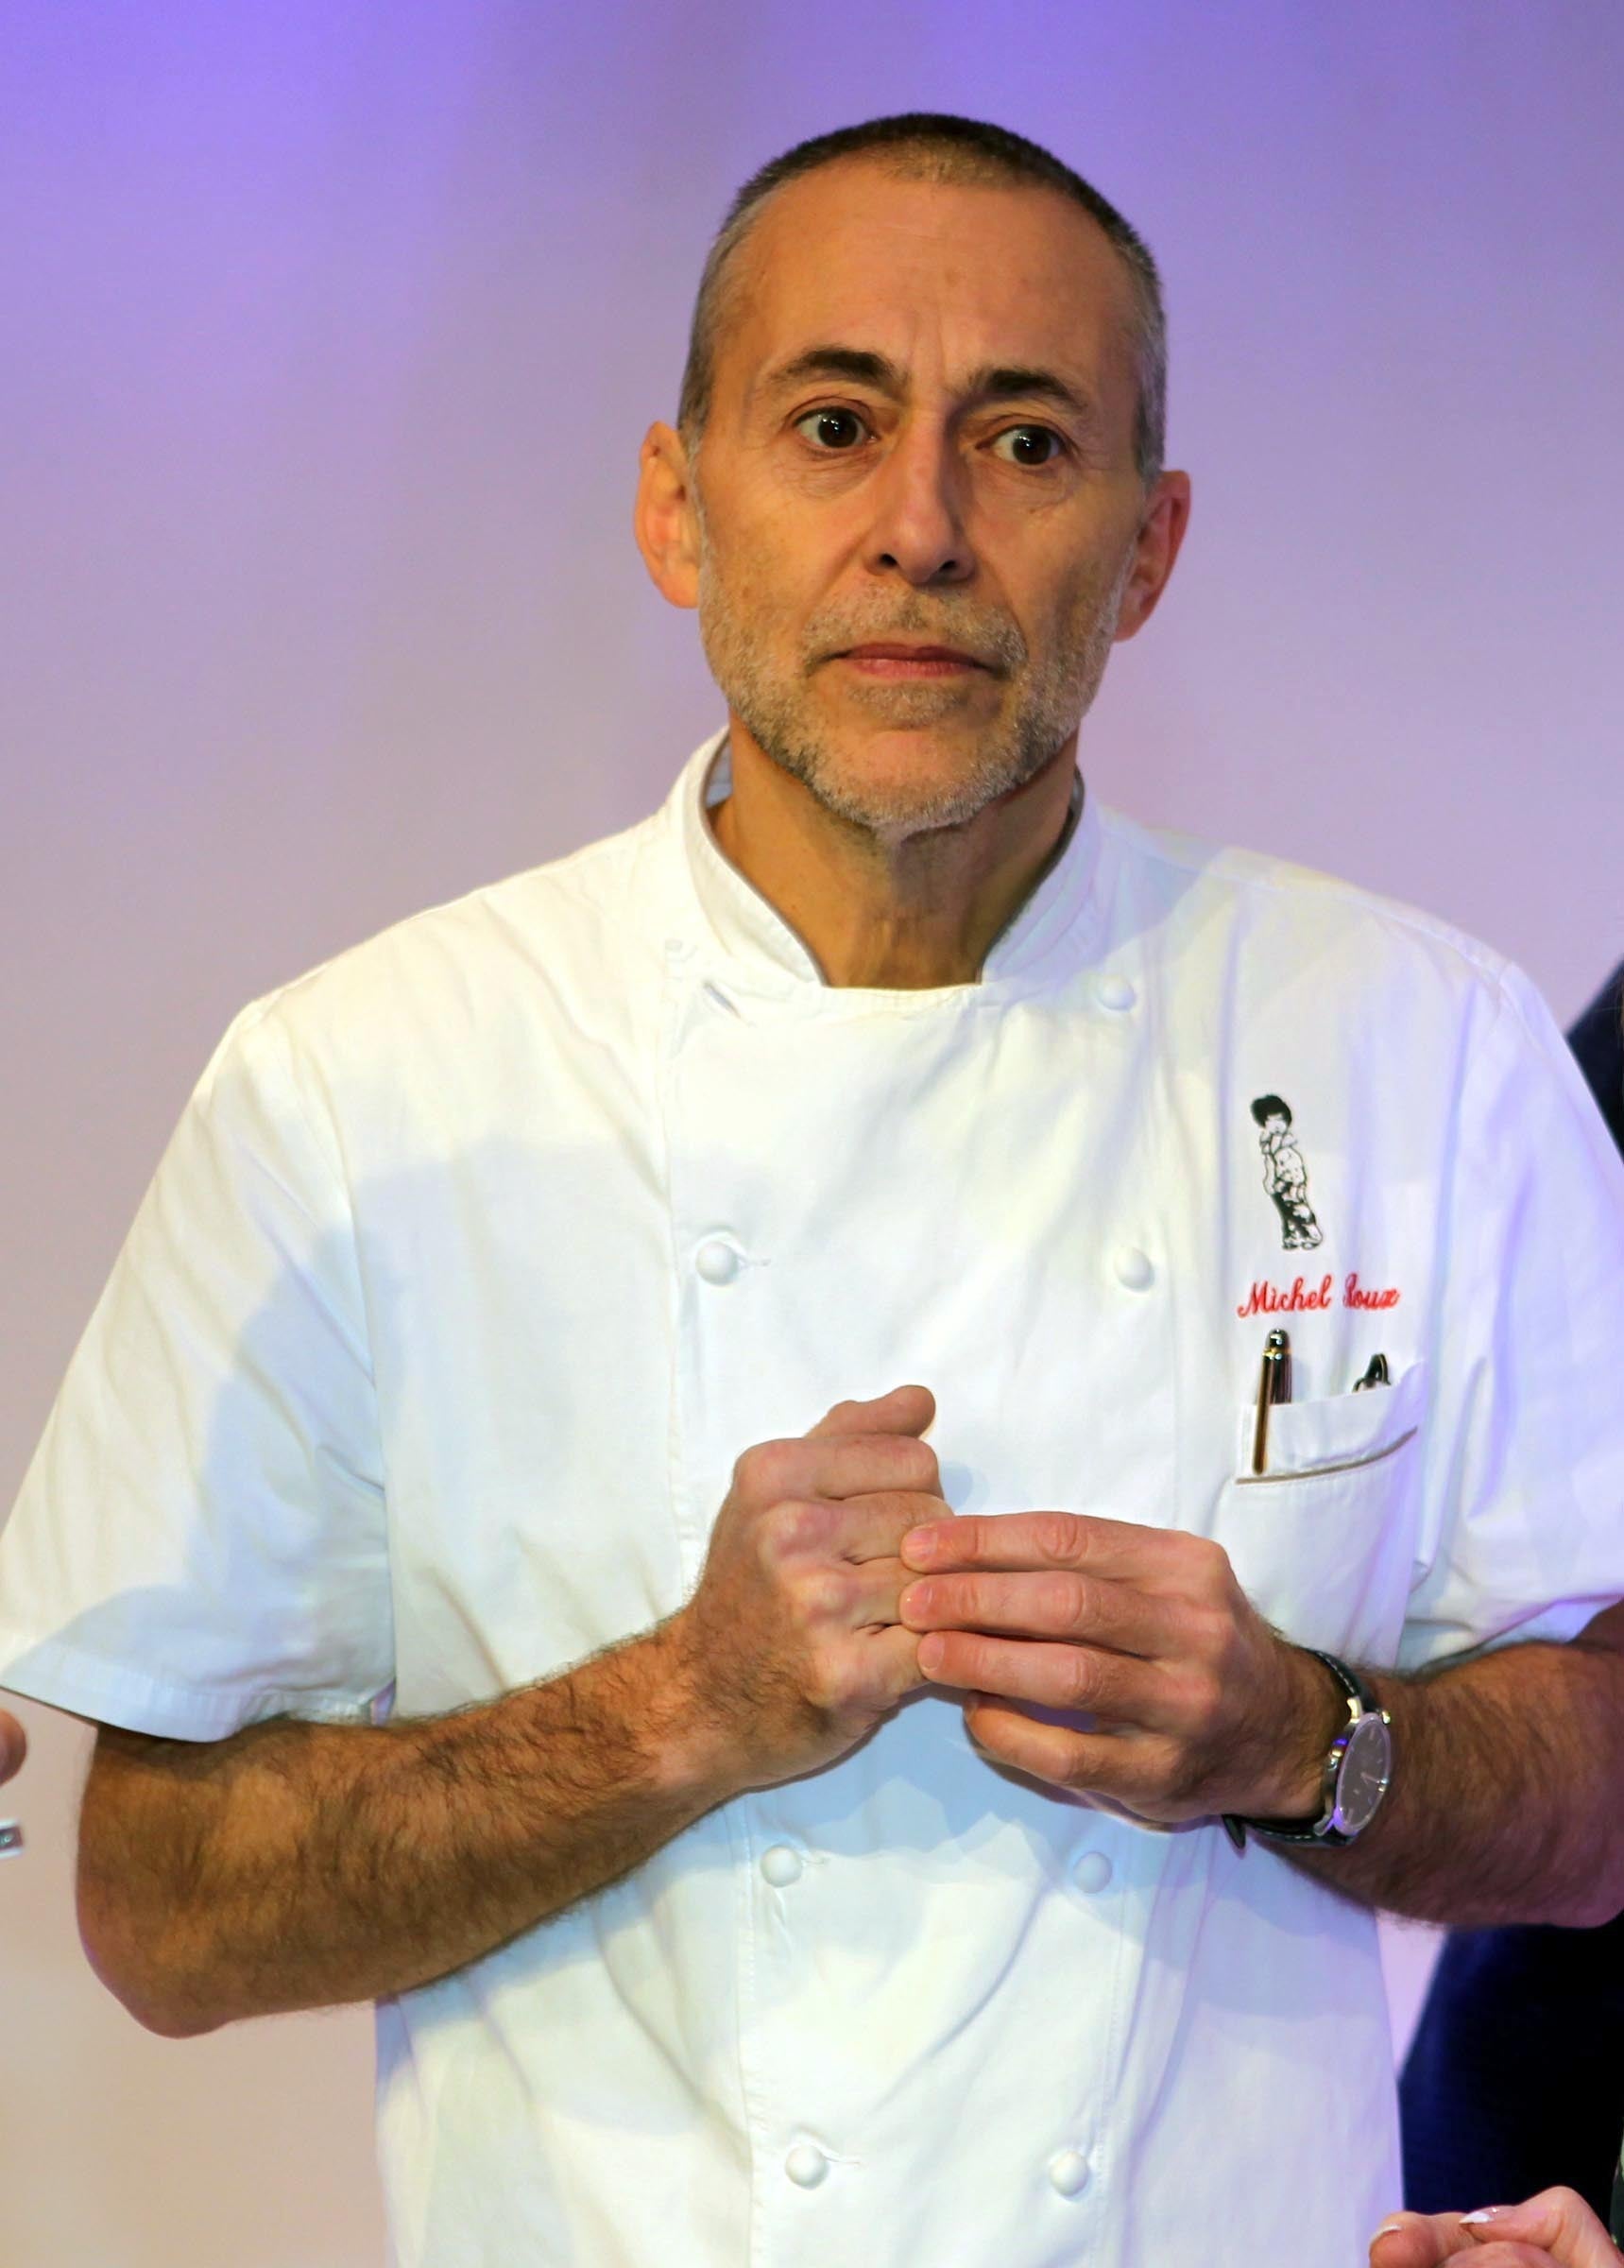 Chef Michel Roux Jr